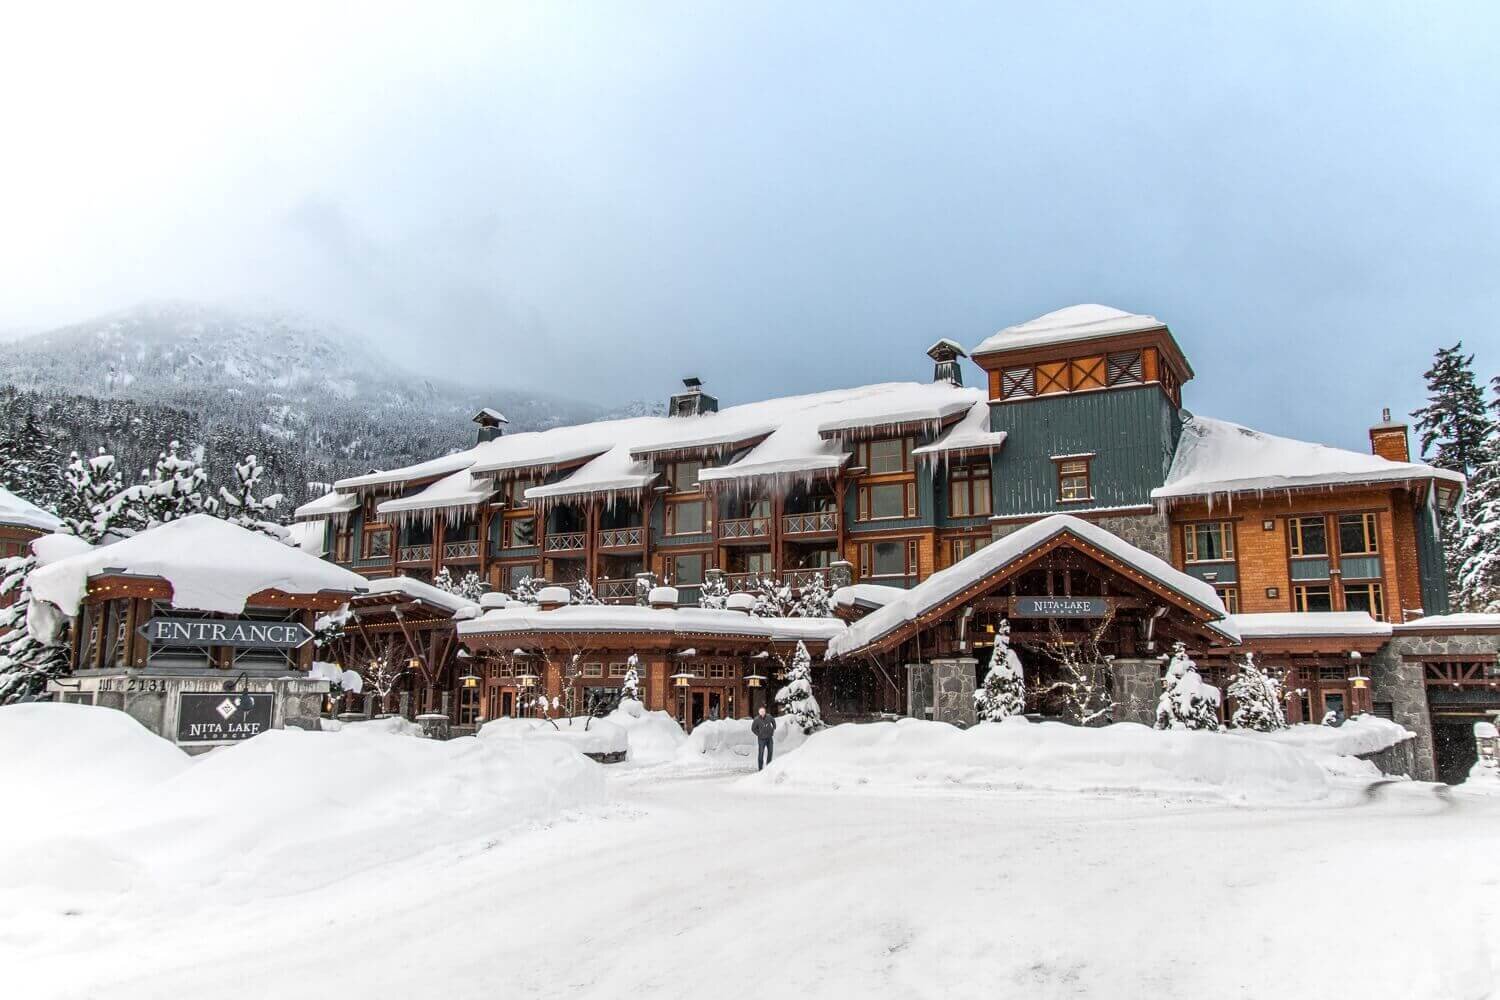 Fachada del hotel boutique Nita Lake Lodge en Whistler, Canada. Vacaciones de invierno en Whistler.